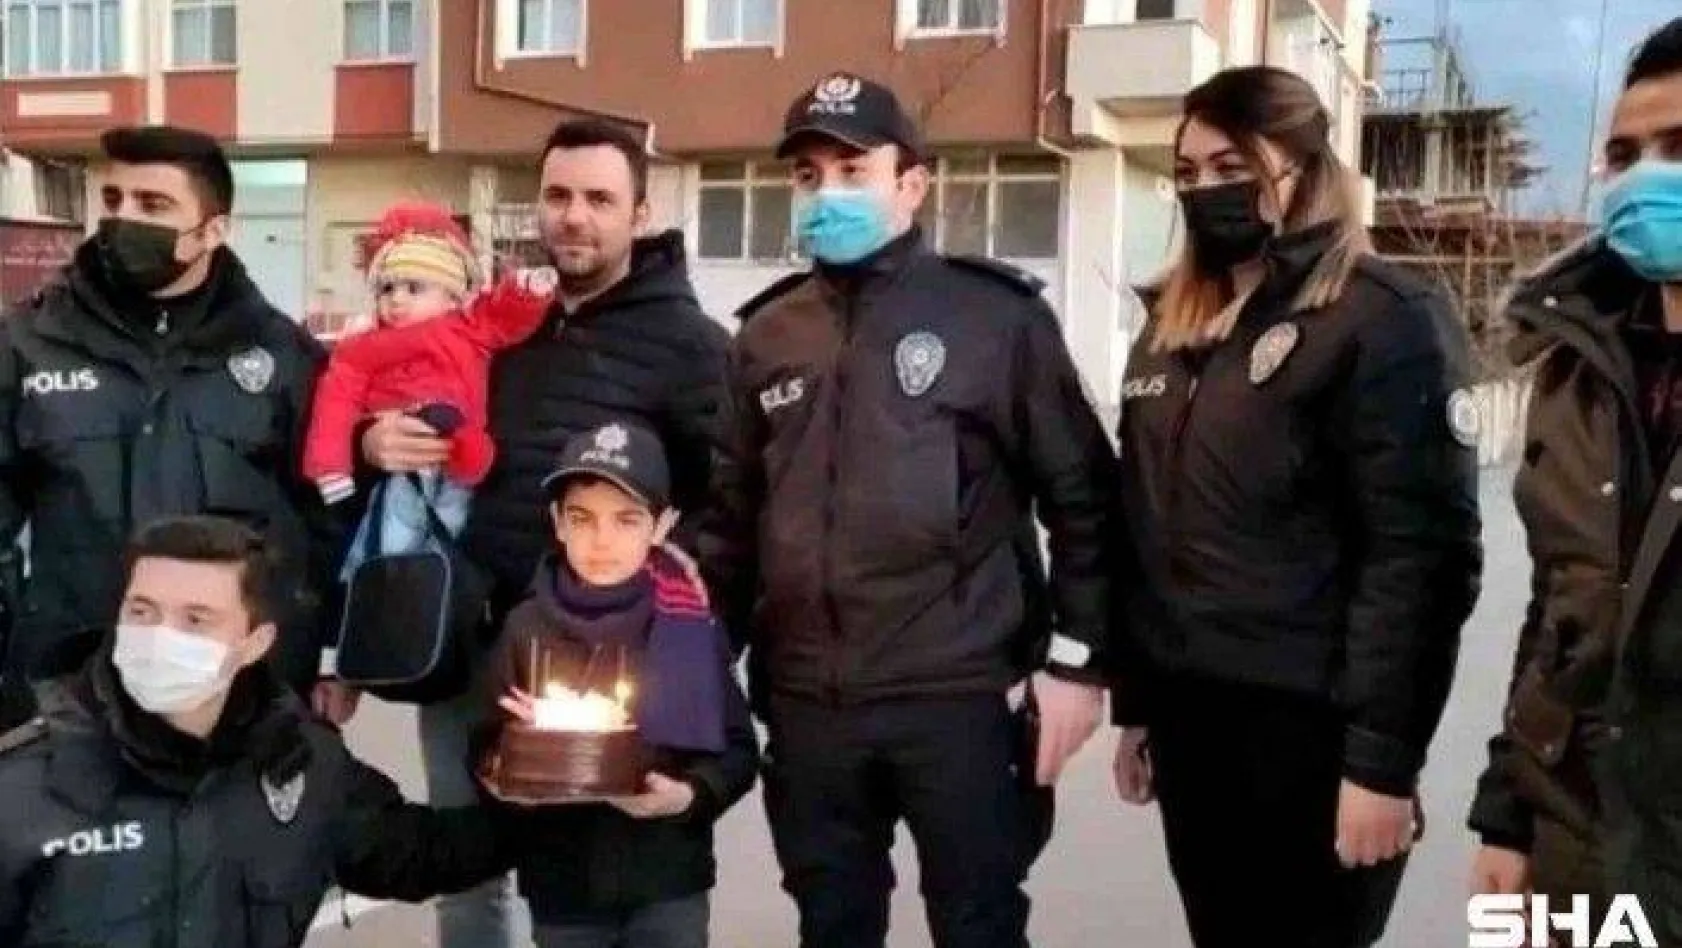 Polisten 7 yaşındaki Alperen'e doğum günü sürprizi